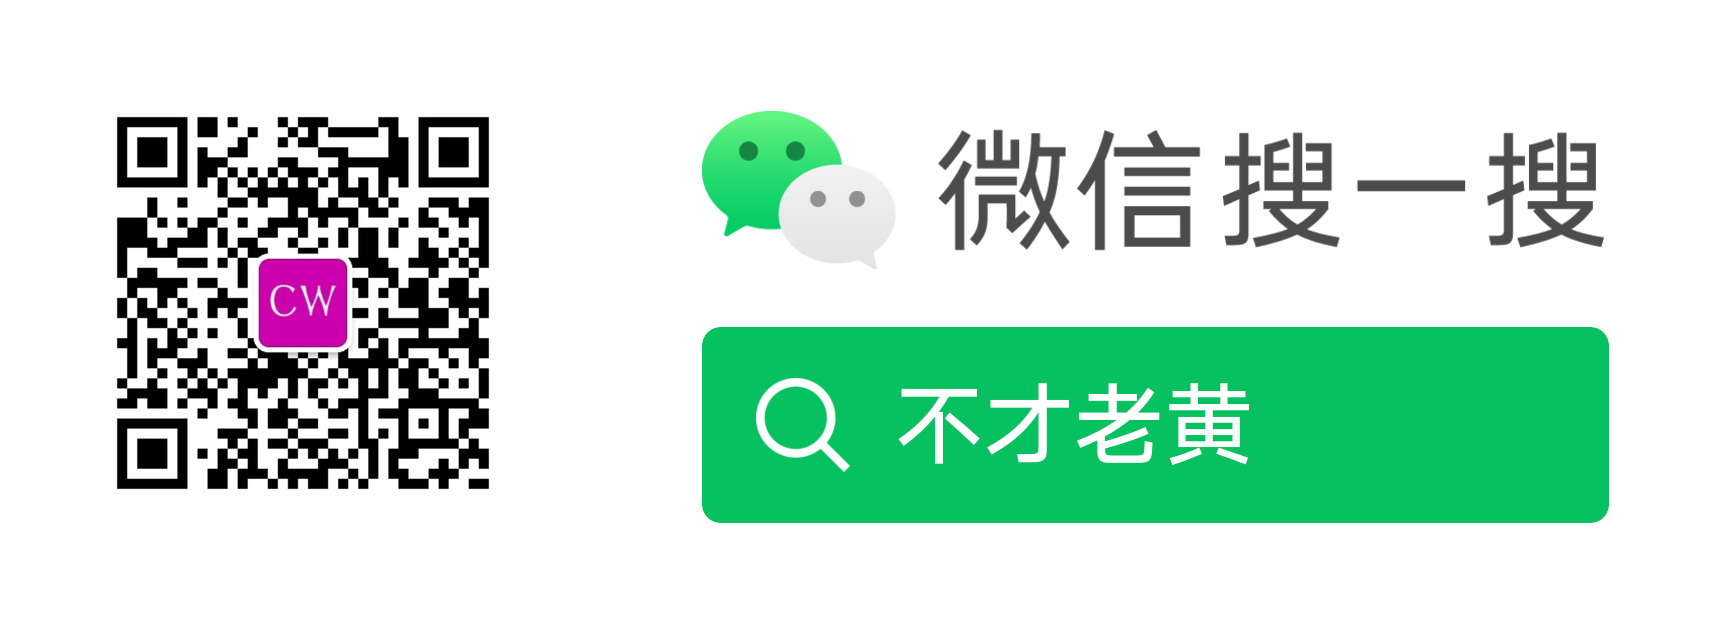 Включи на китайском 10. 微光app.